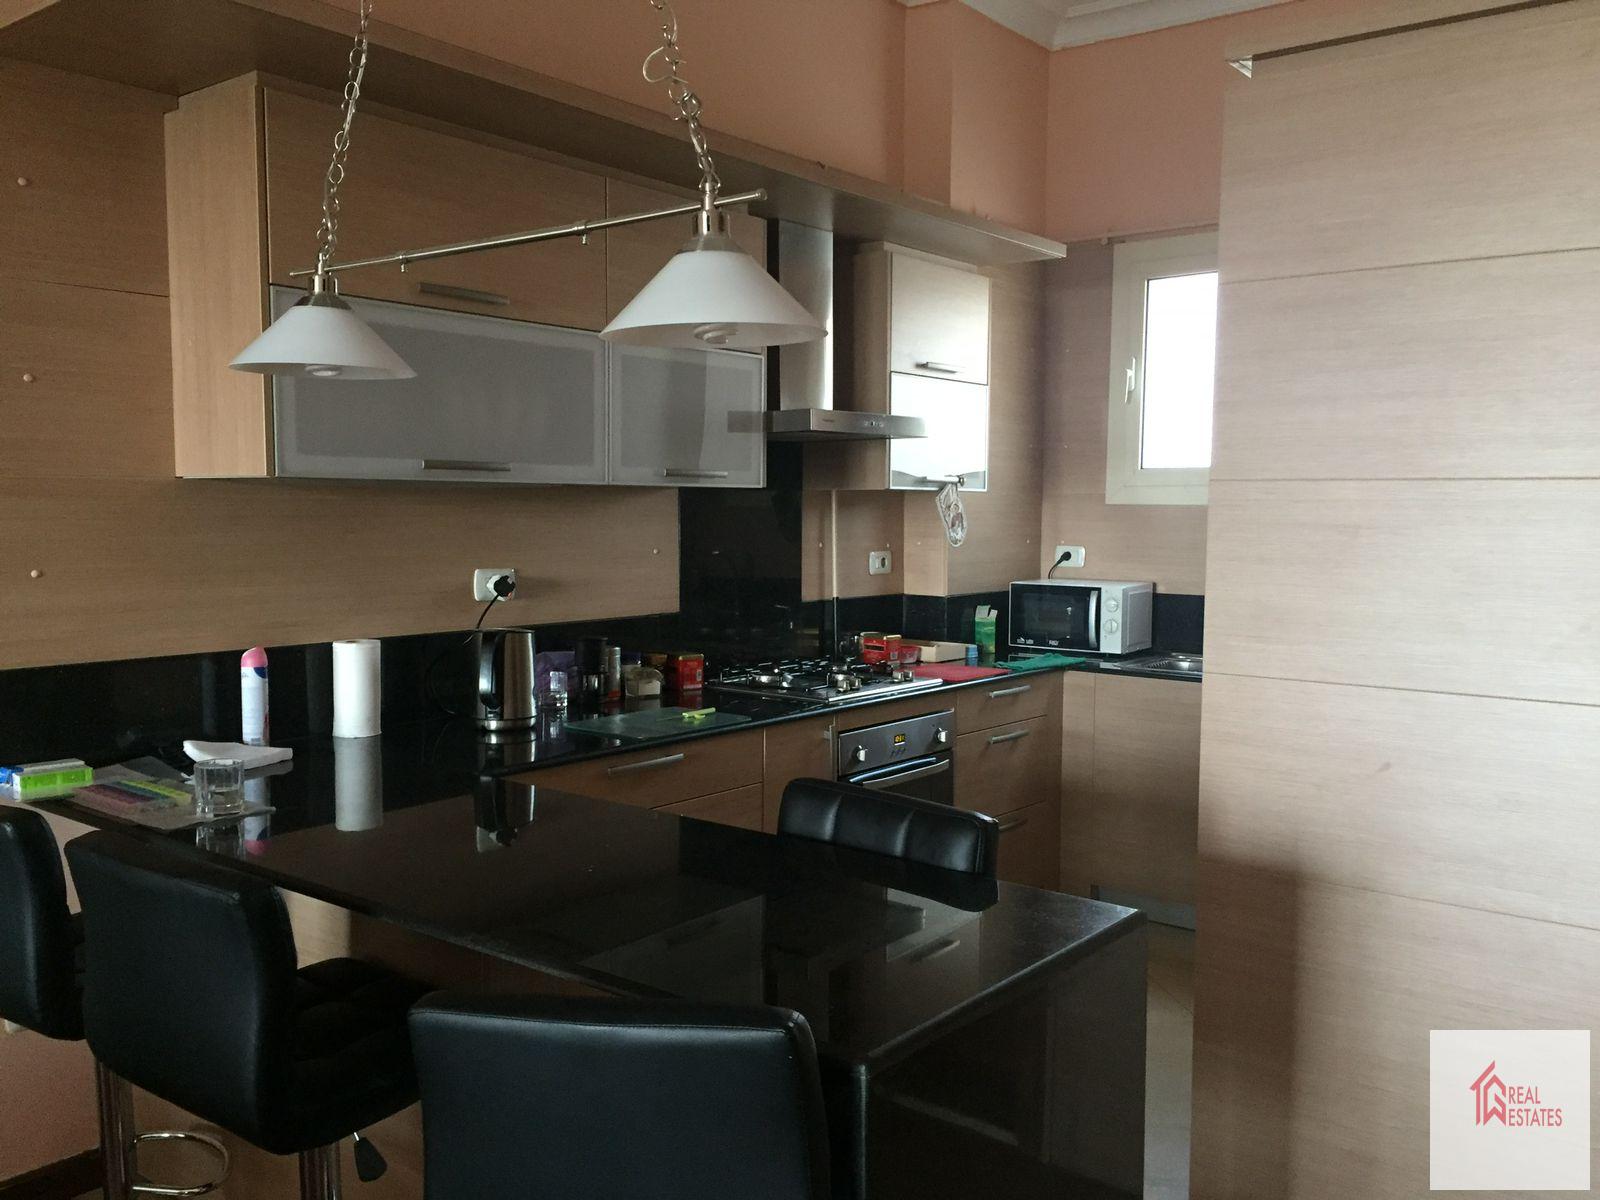 Modern möblierte Wohnung zur Miete in Katameya Heights, 2 Badezimmer und passt in ein Mehrfamilienhaus